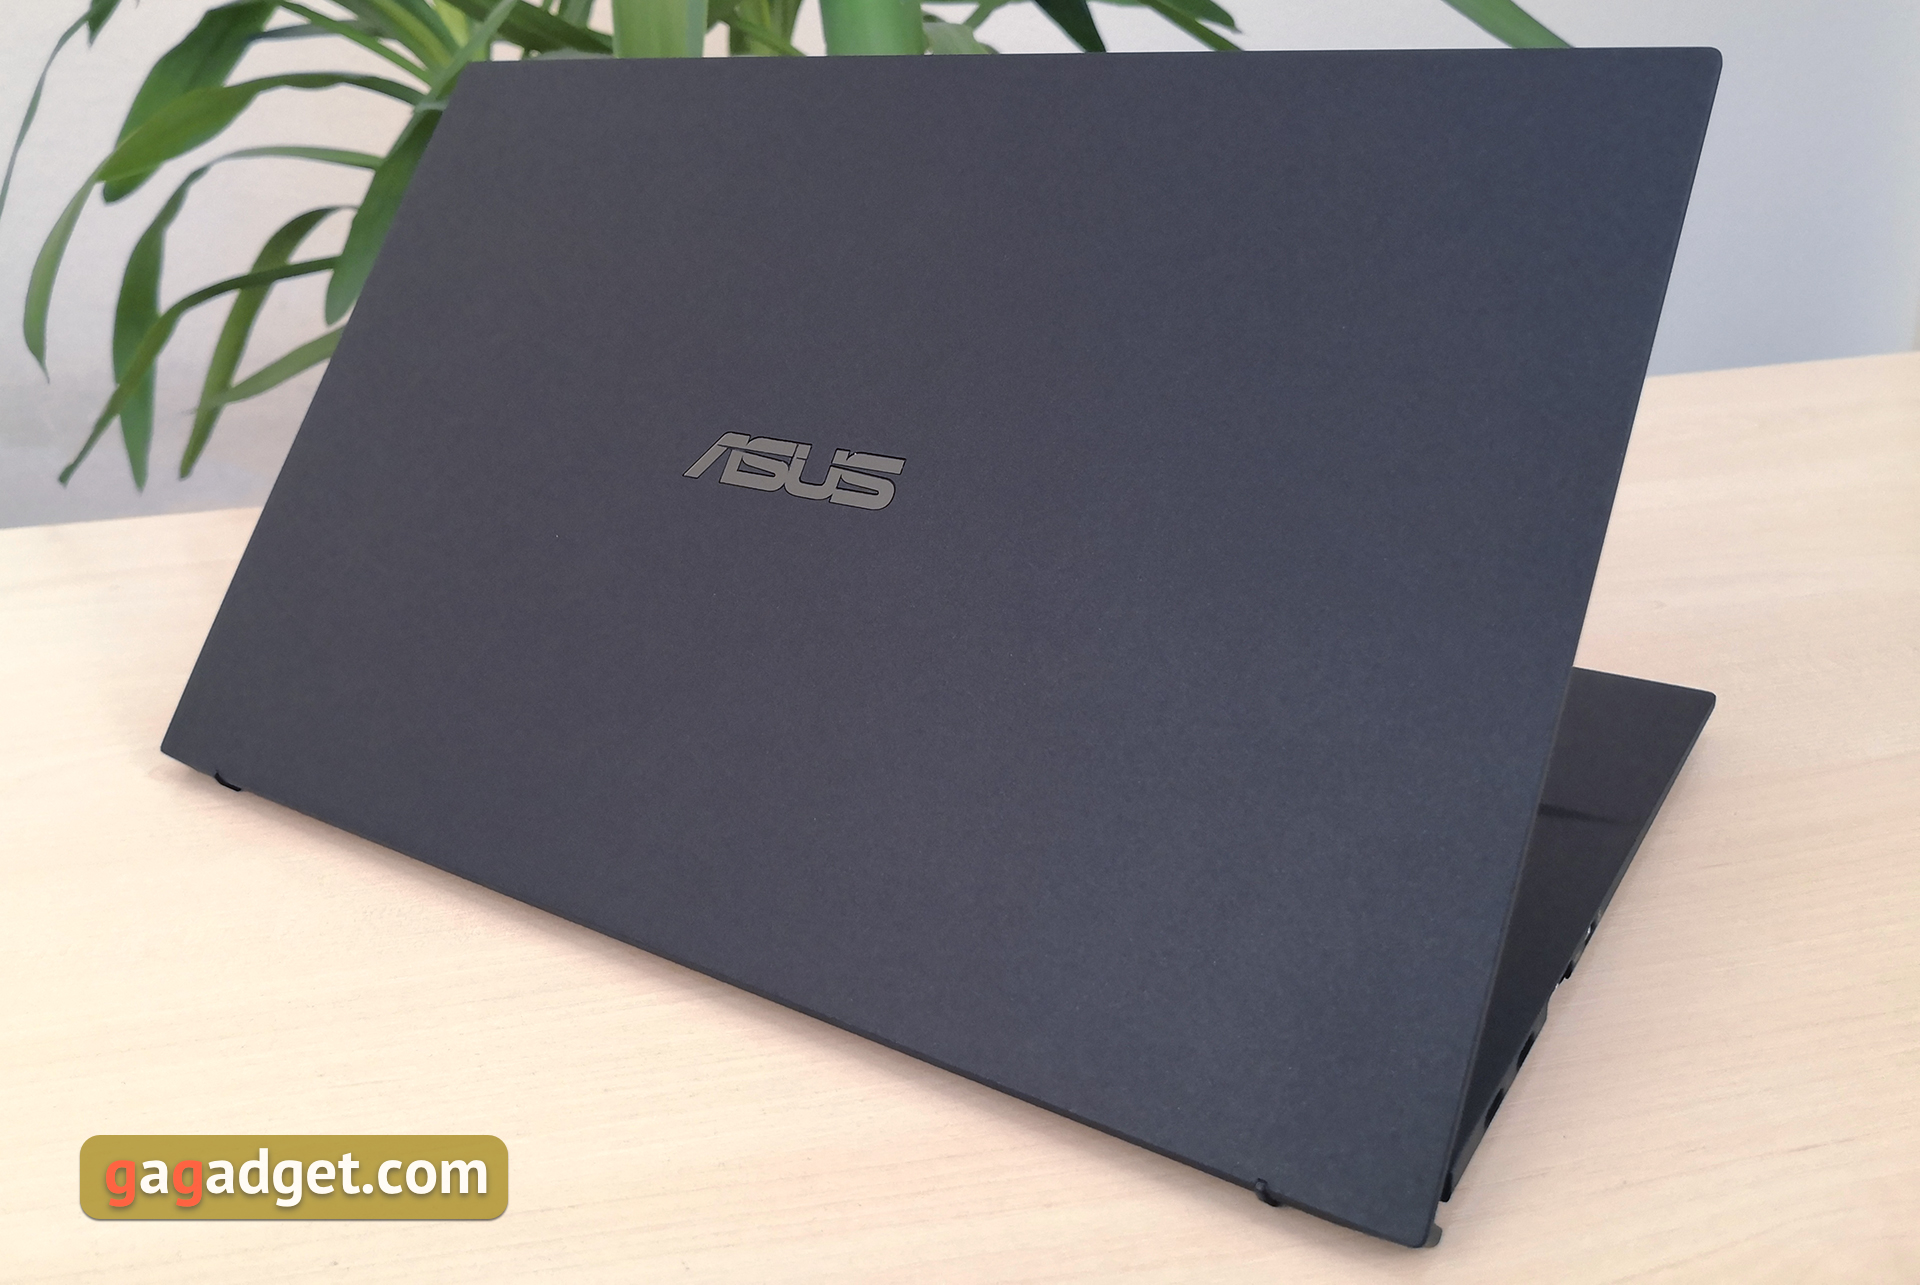 Recenzja ASUS ExpertBook B9450: ultralekki wymarzony notebook biznesowy o fantastycznej żywotności baterii-6